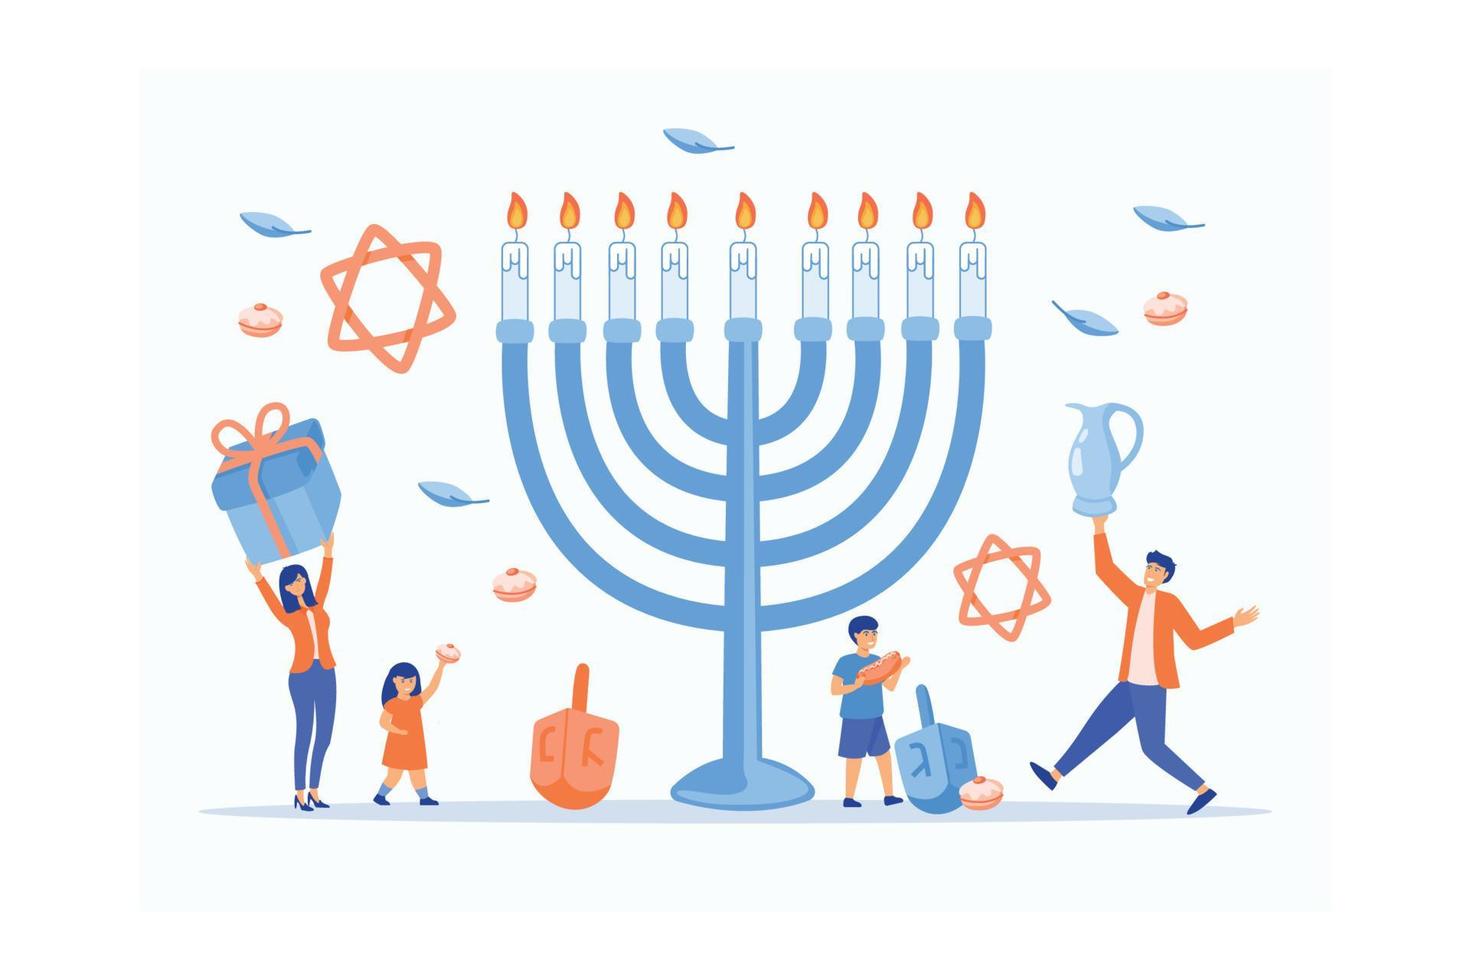 joyeux hanukkah, fête juive des lumières scène avec des gens, familles heureuses avec enfants, illustration moderne de vecteur plat